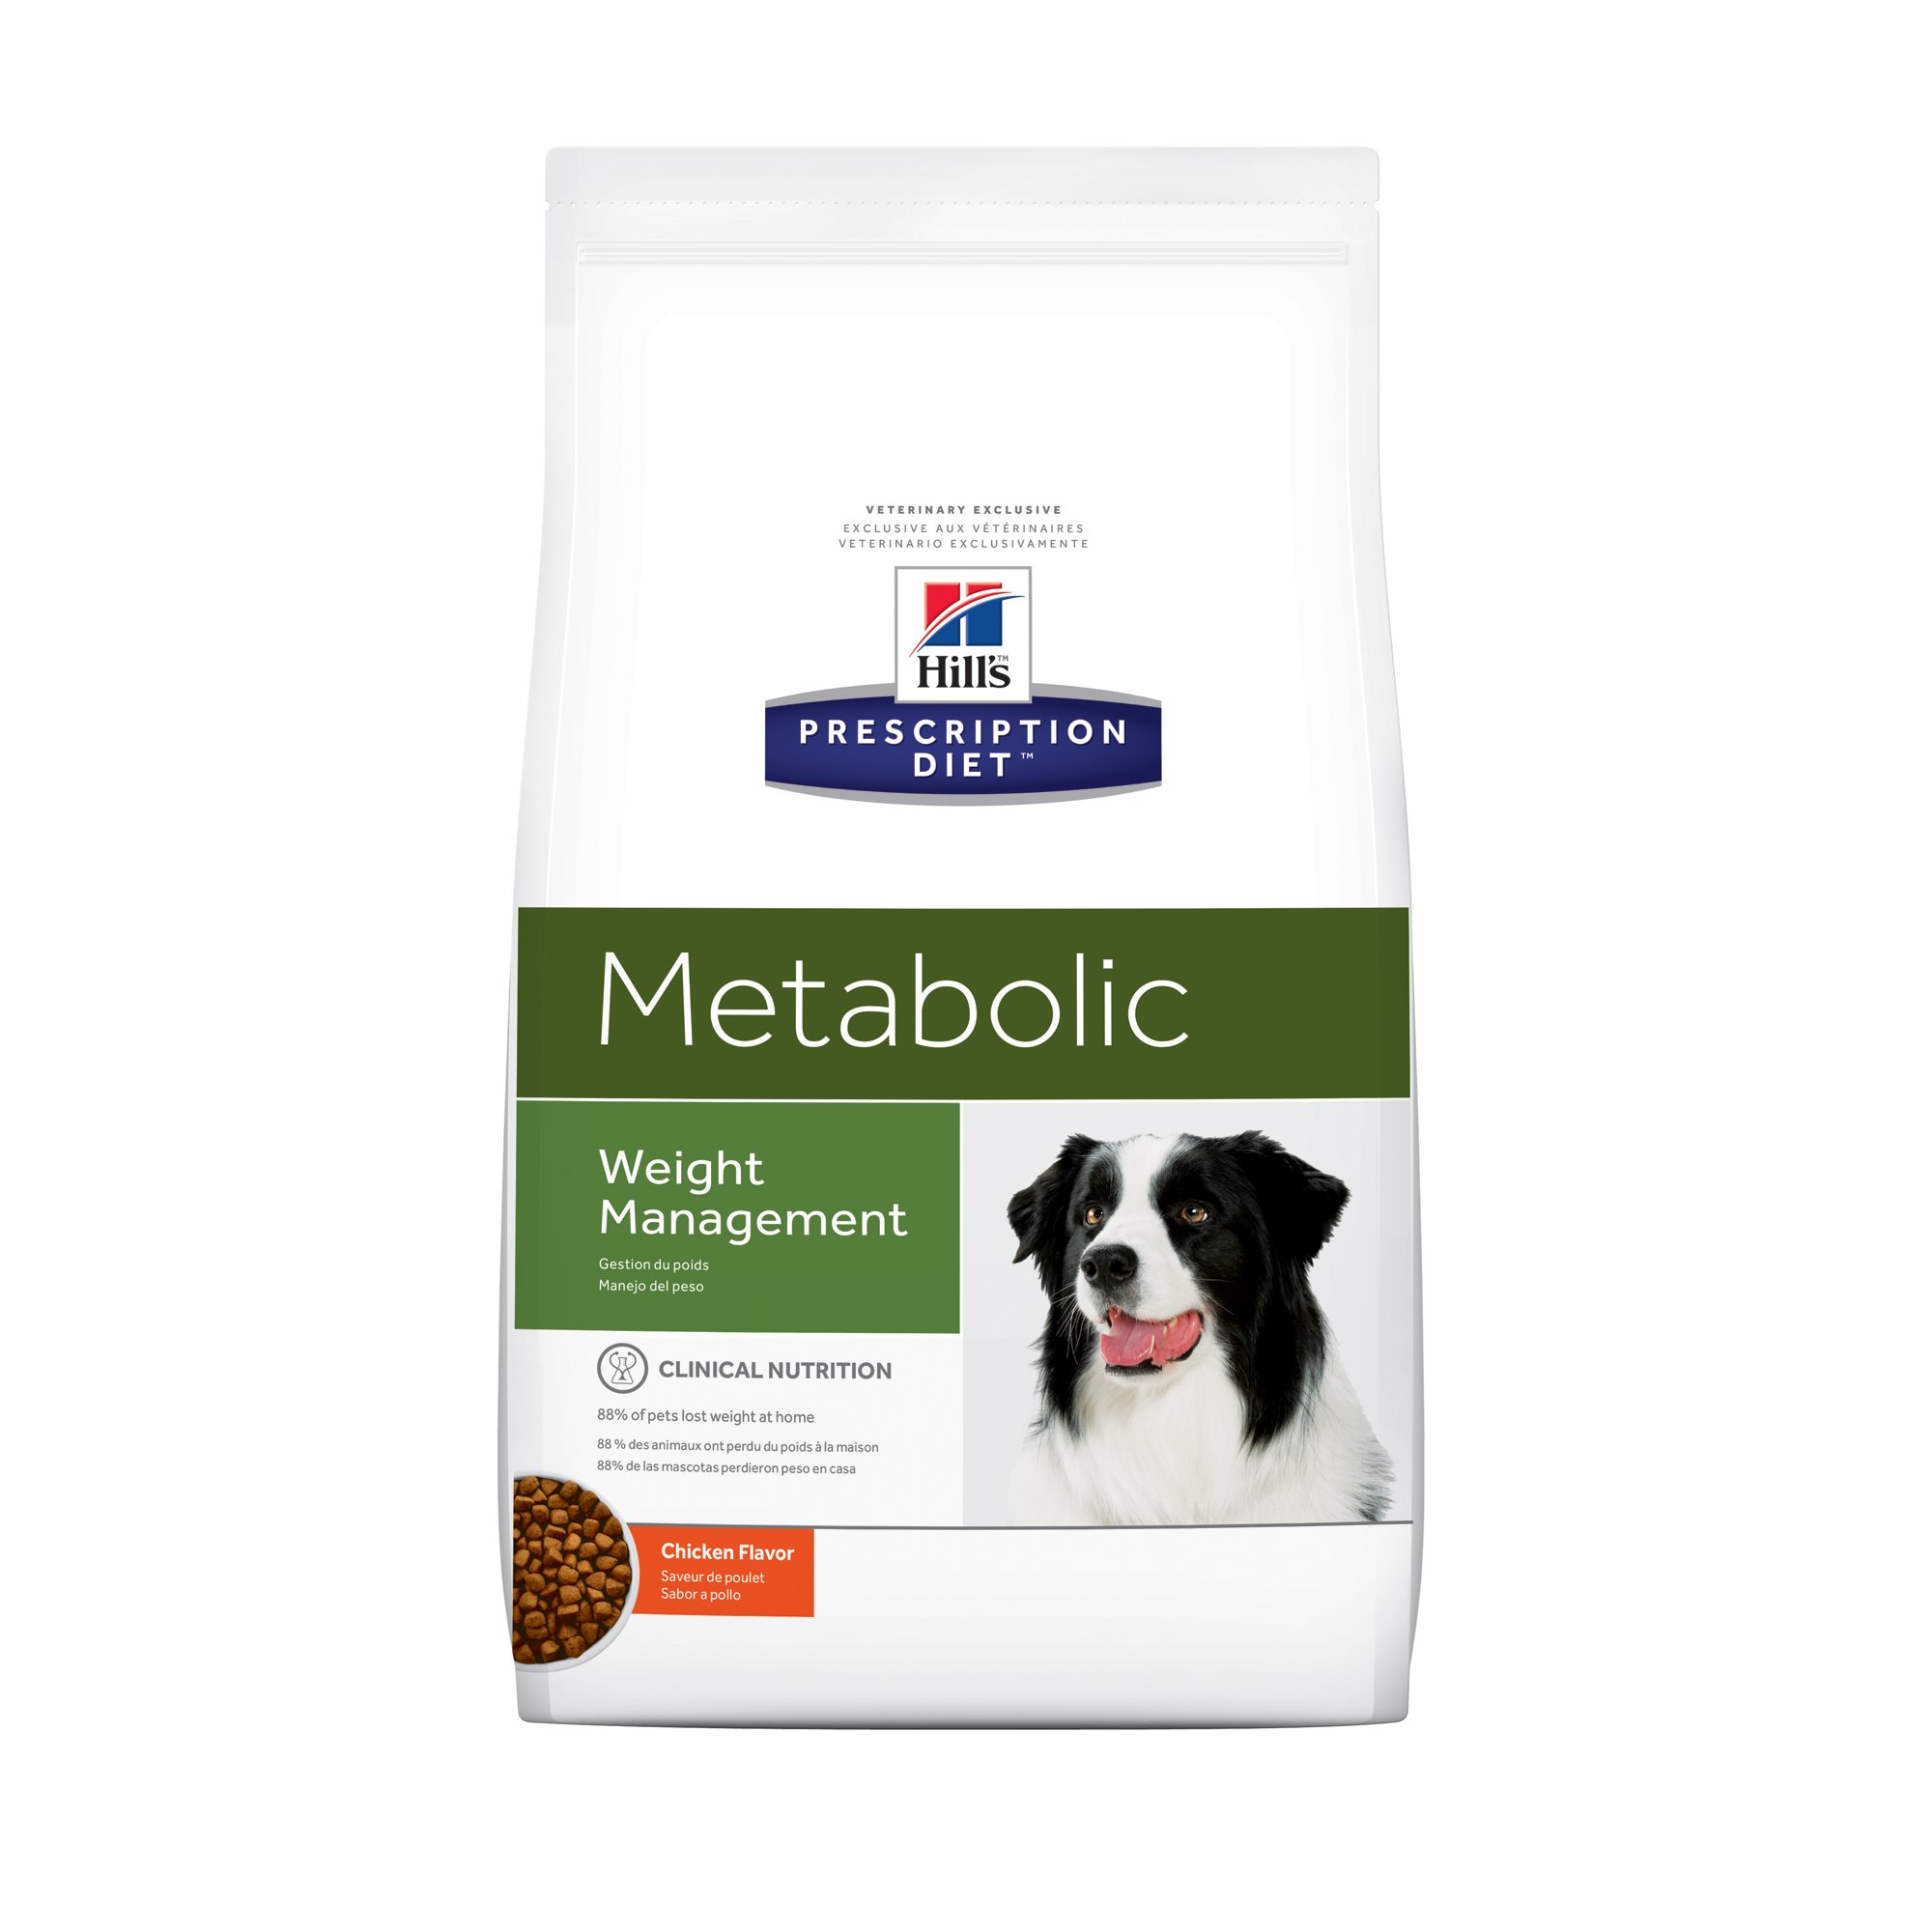 Купить сухой корм hills. Корм для собак Hill's Prescription Diet metabolic. Корм для собак Хиллс Метаболик. Хиллс корм для собак Метаболик крупных пород. Хиллс Метаболик для собак.